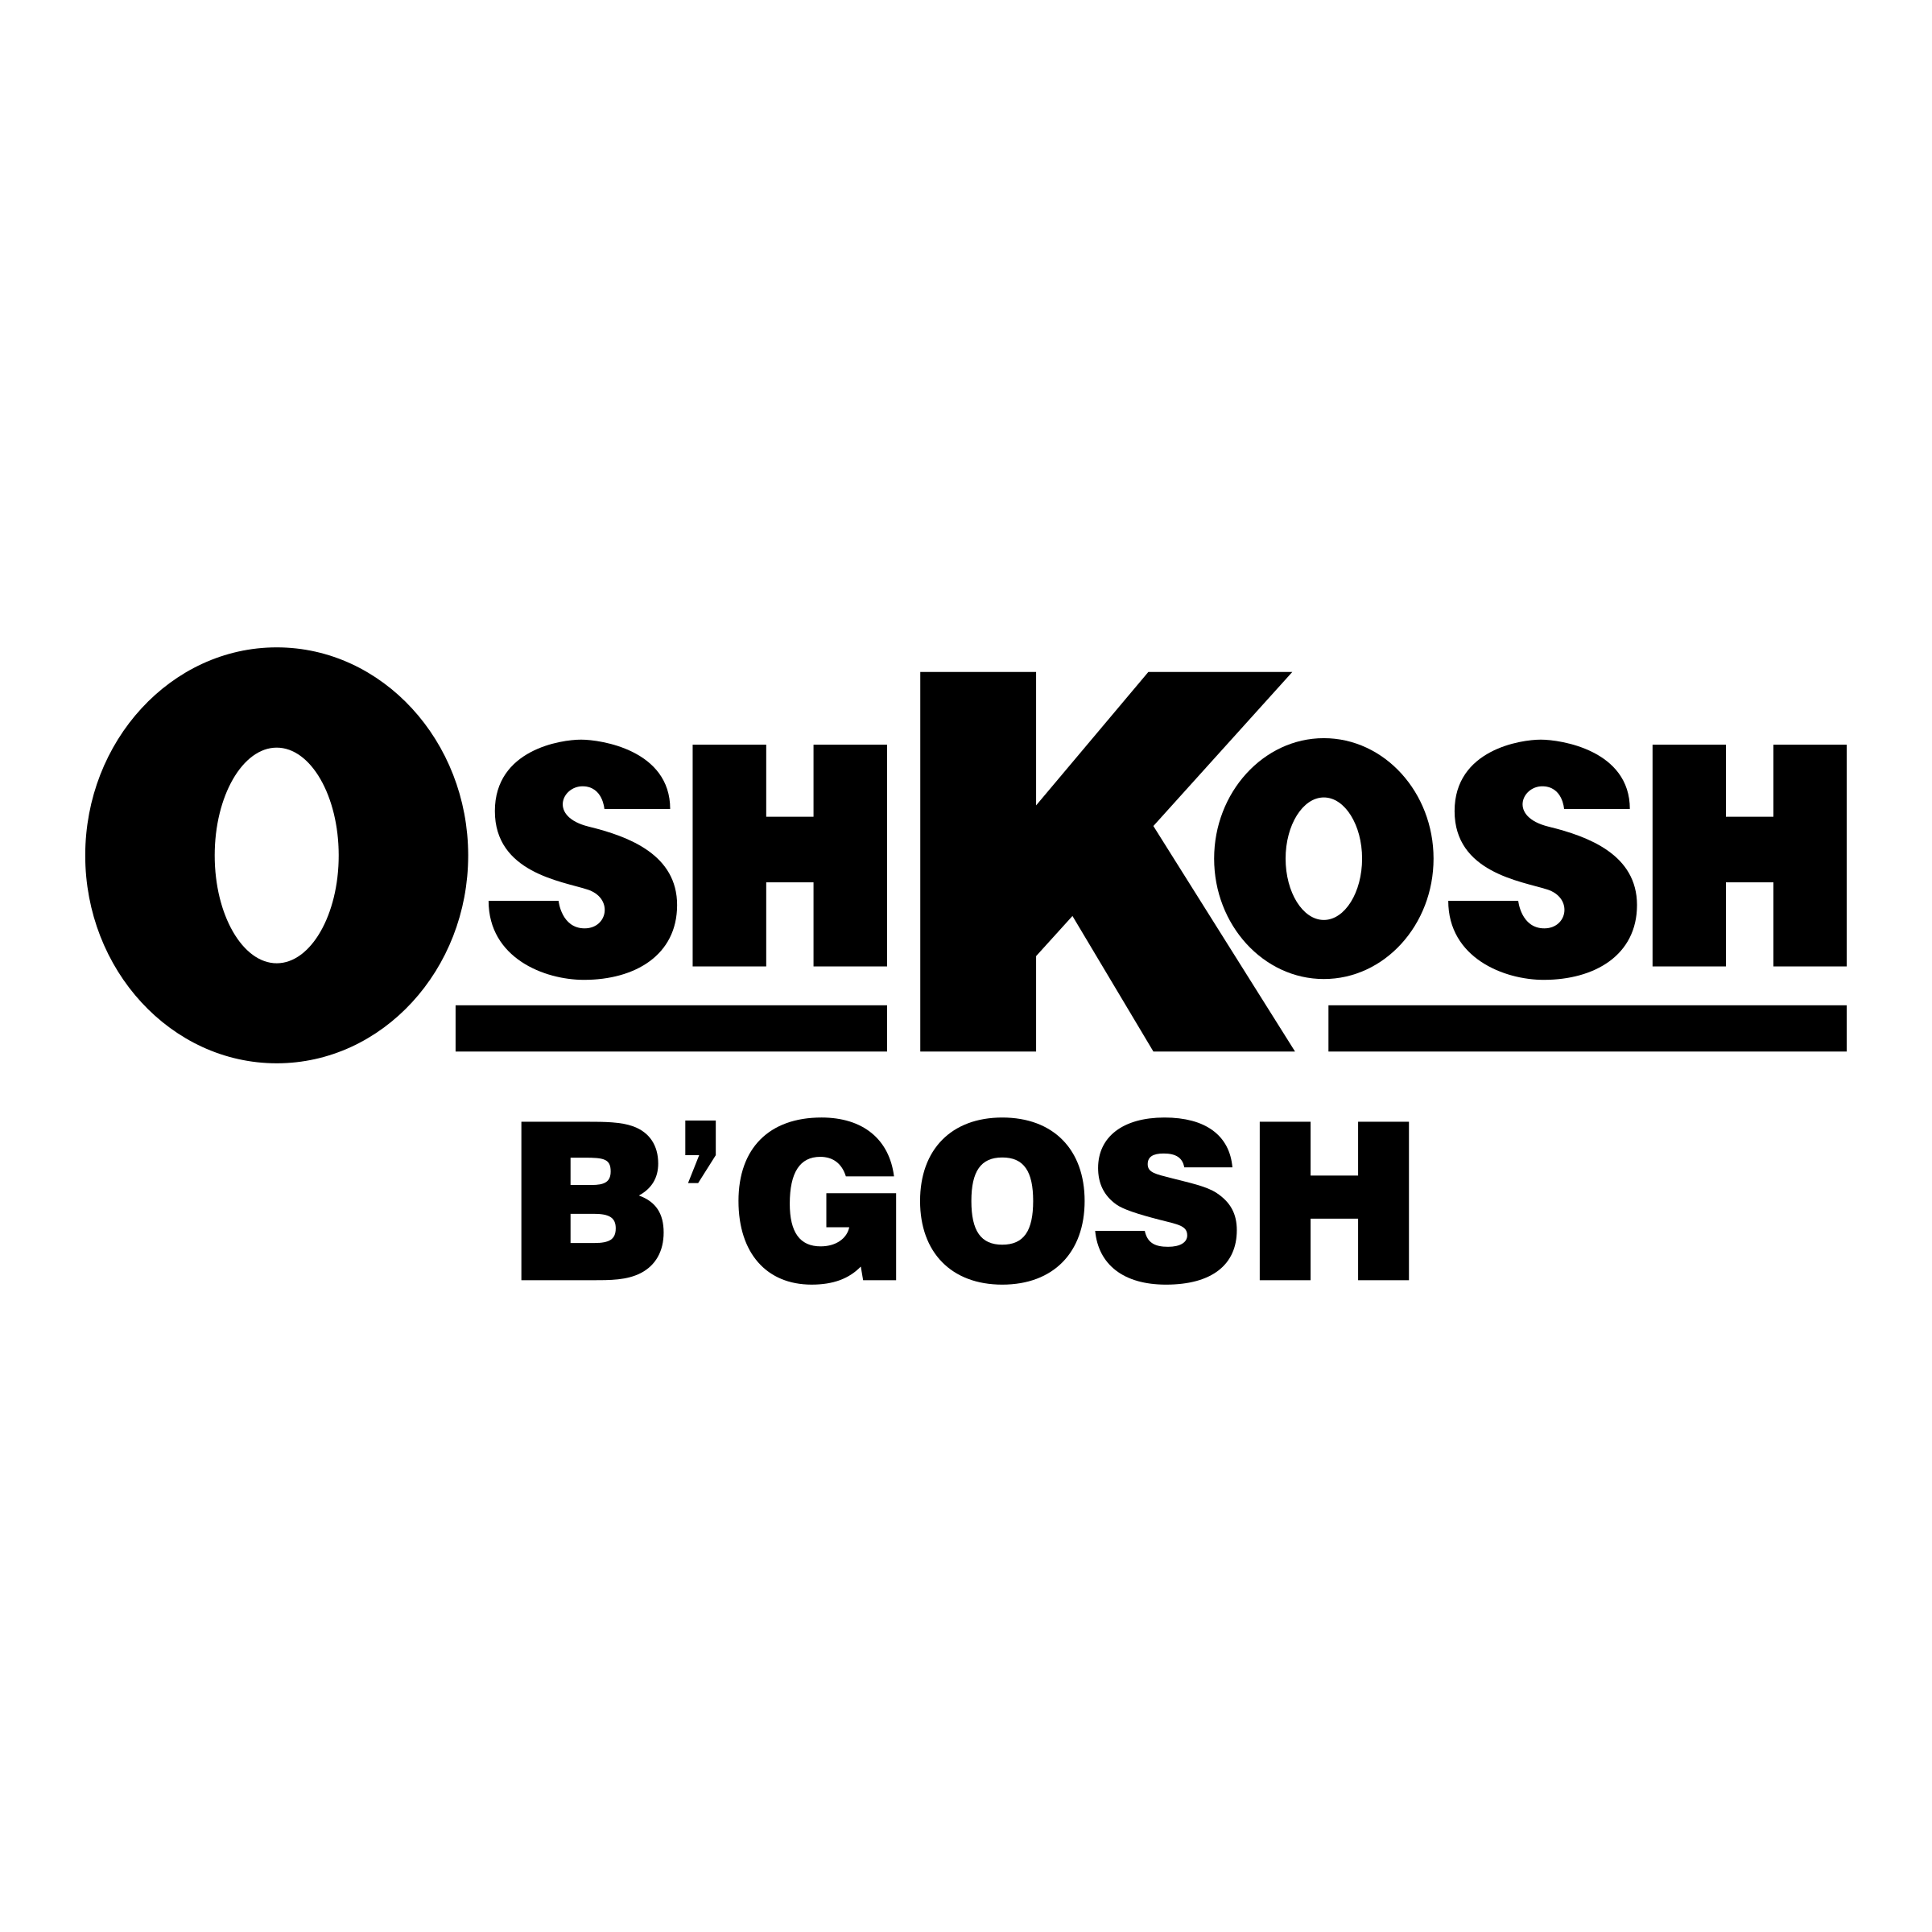 Oshkosh Logo - OshKosh B'Gosh Logo PNG Transparent & SVG Vector - Freebie Supply